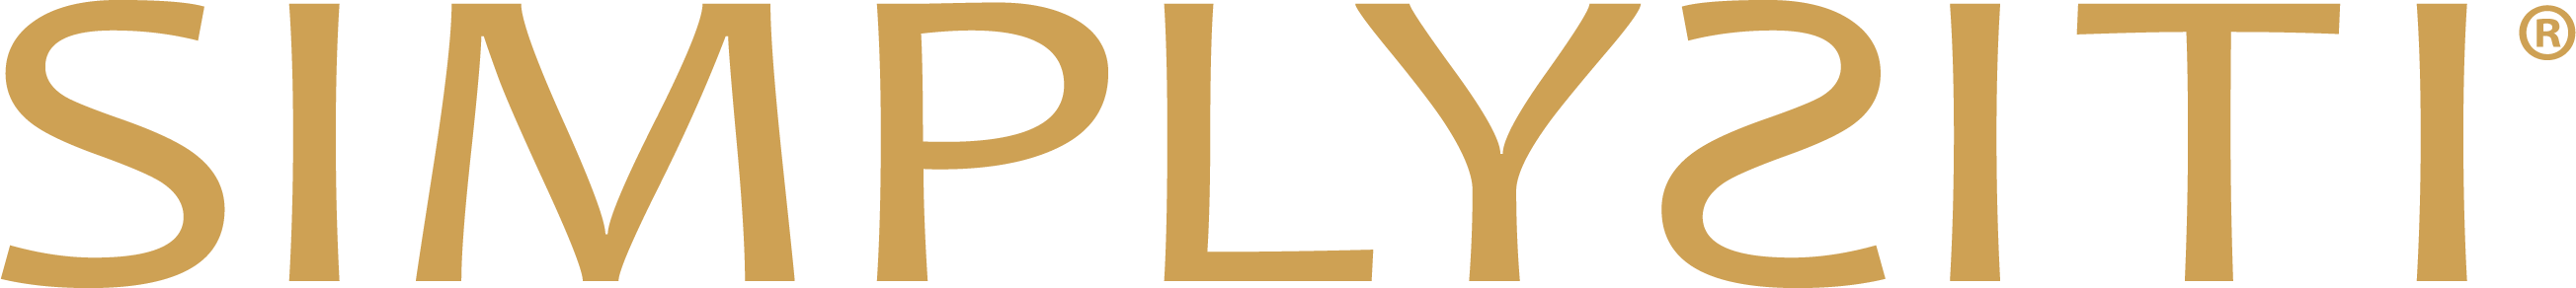 Logo Simplysiti Gold